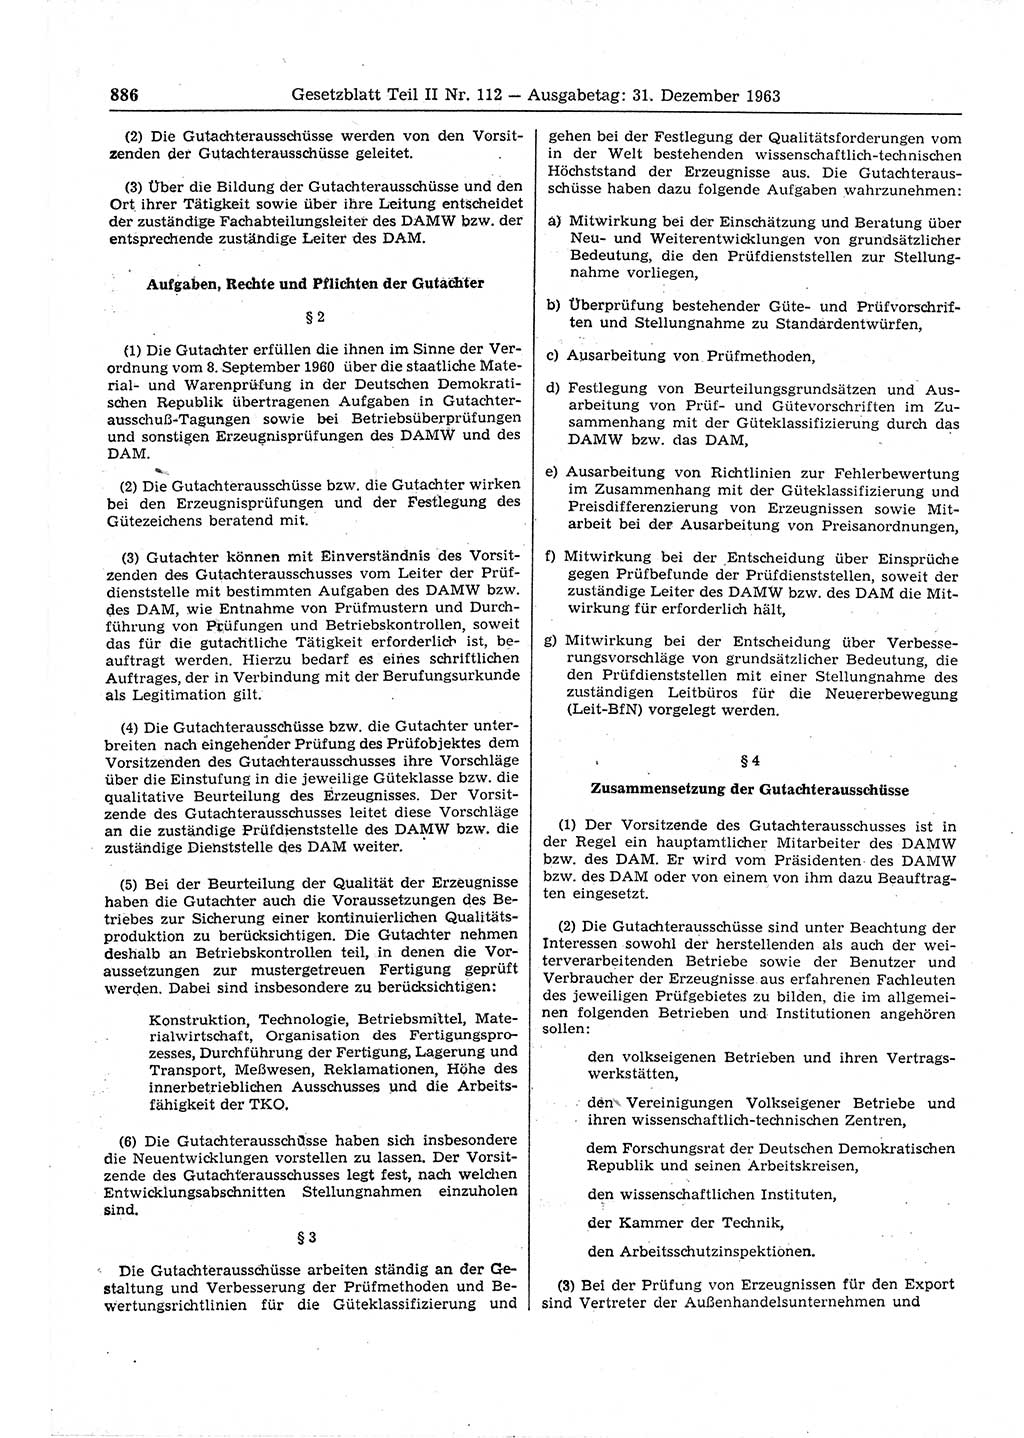 Gesetzblatt (GBl.) der Deutschen Demokratischen Republik (DDR) Teil ⅠⅠ 1963, Seite 886 (GBl. DDR ⅠⅠ 1963, S. 886)